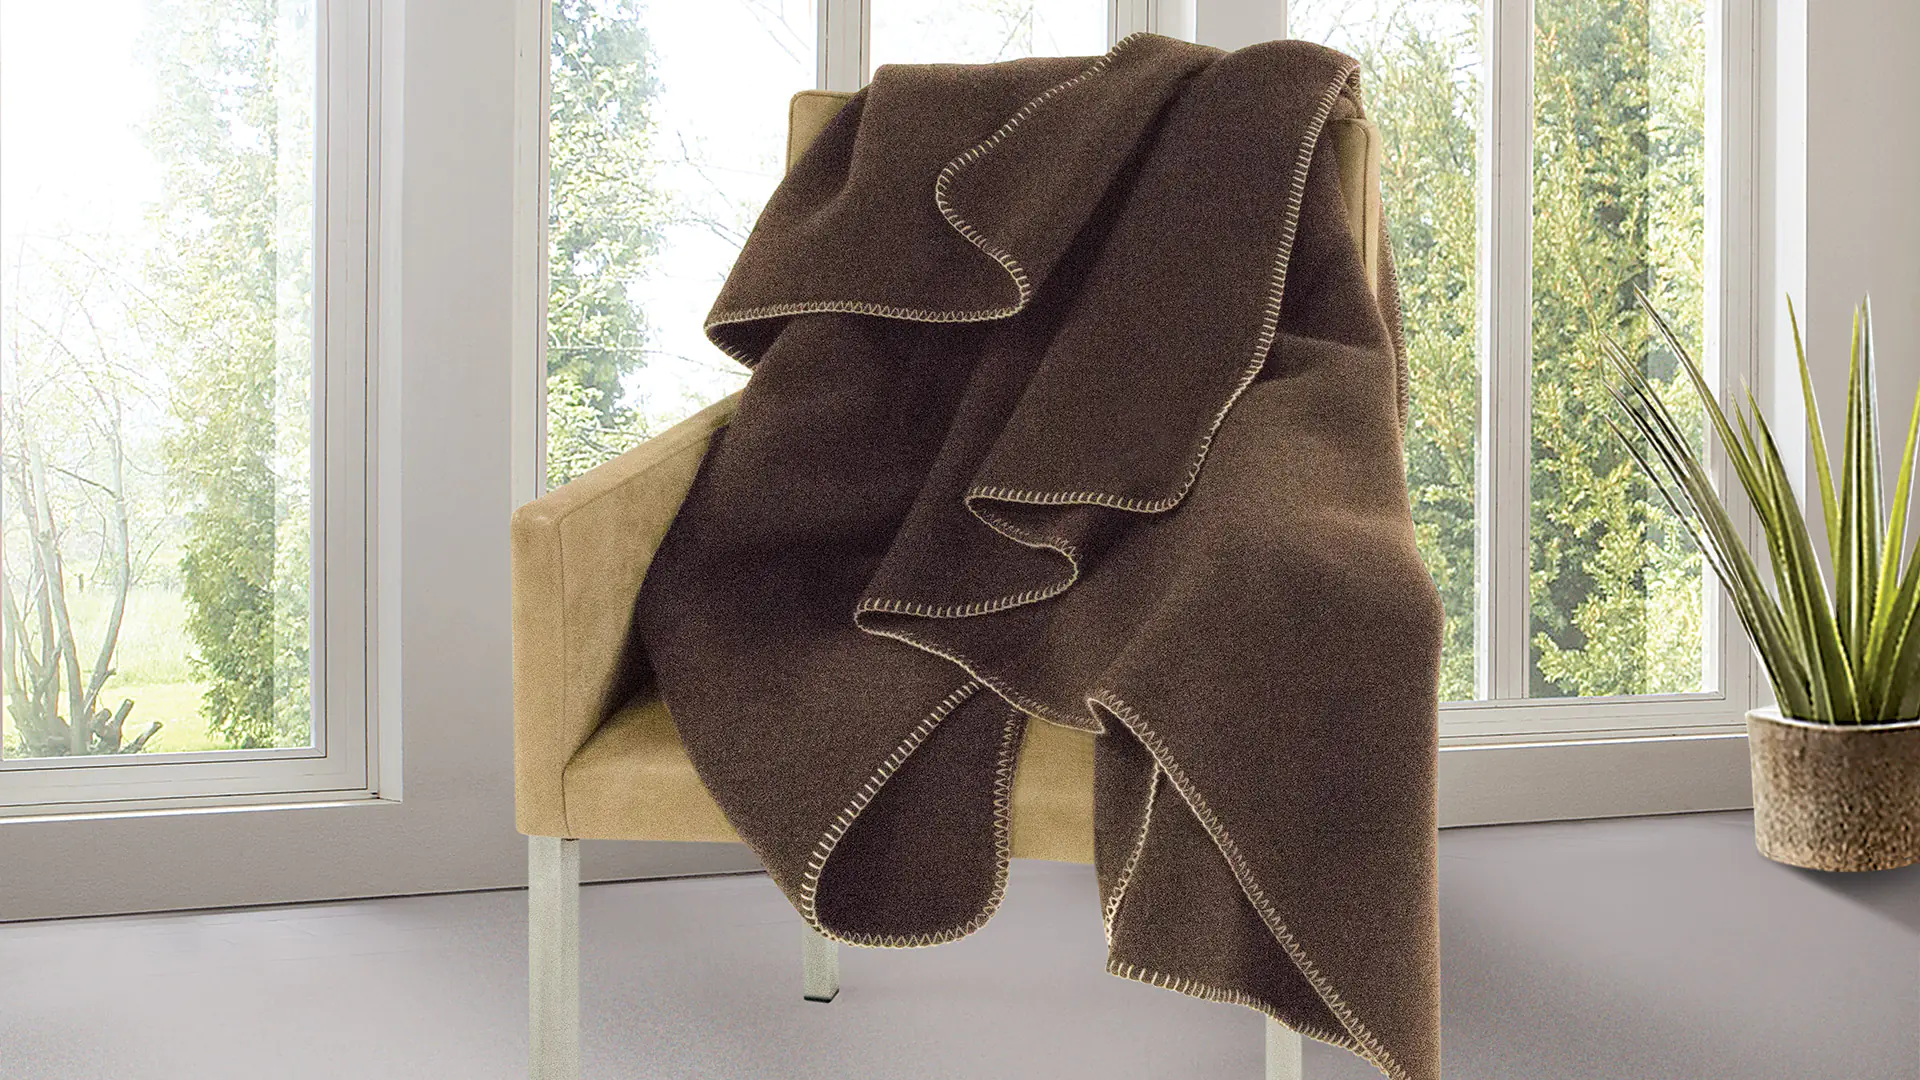 Donzige deken van natuurlijk haar van warmende yakwol